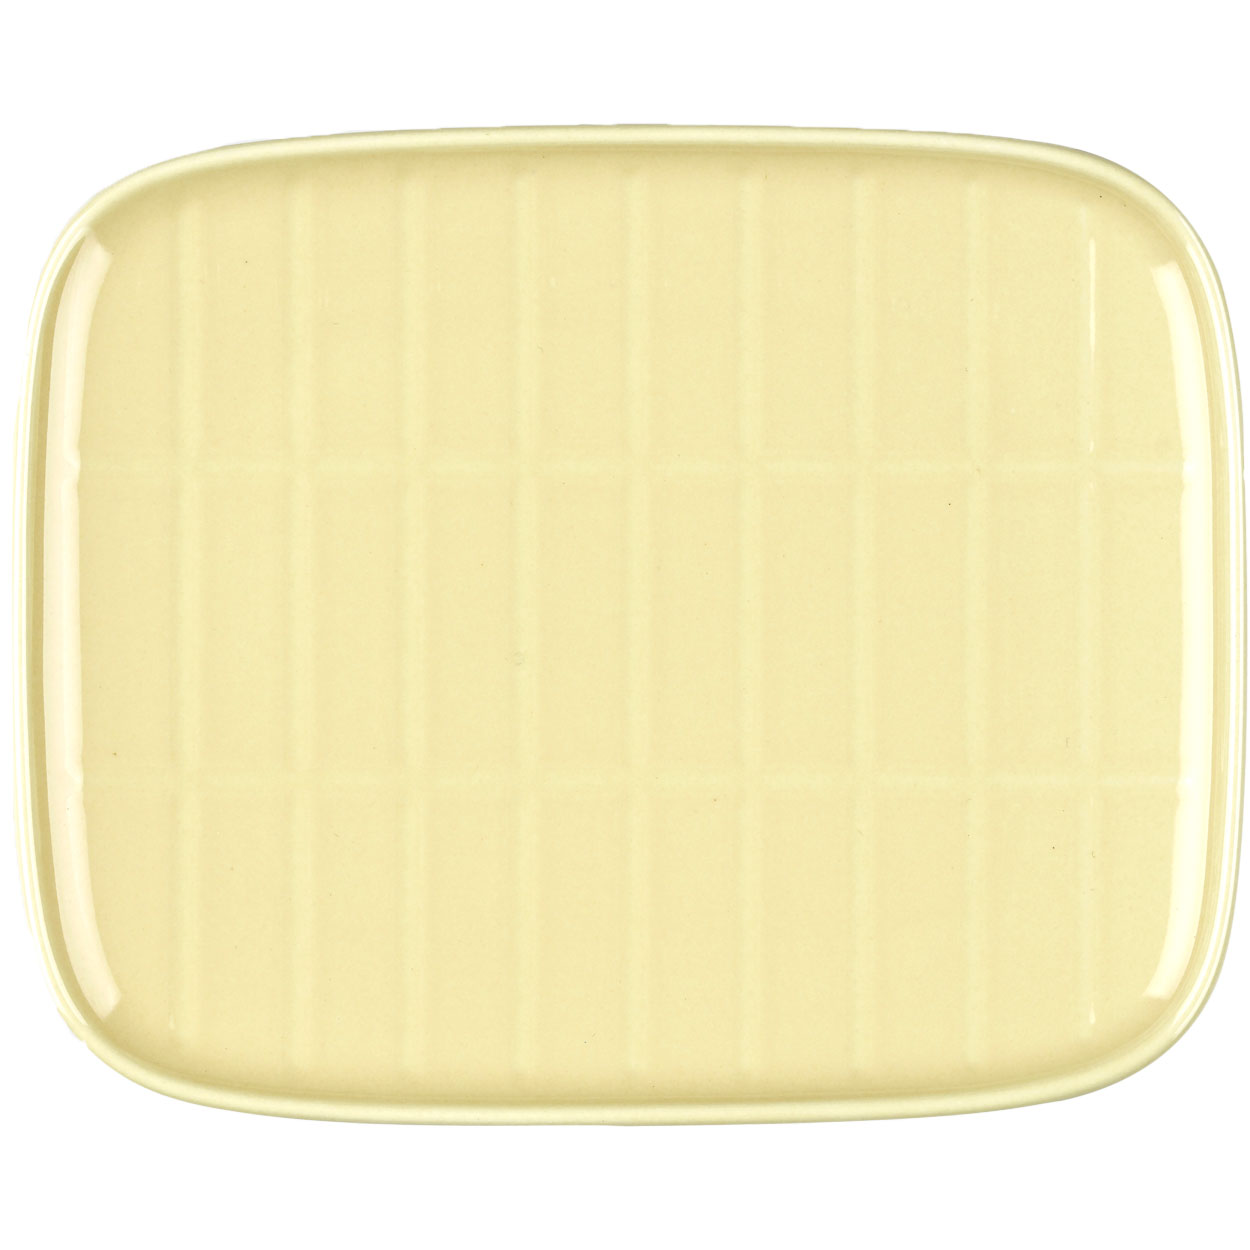 Oiva/Tiiliskivi Tallrik 12x15 cm, Butter Yellow